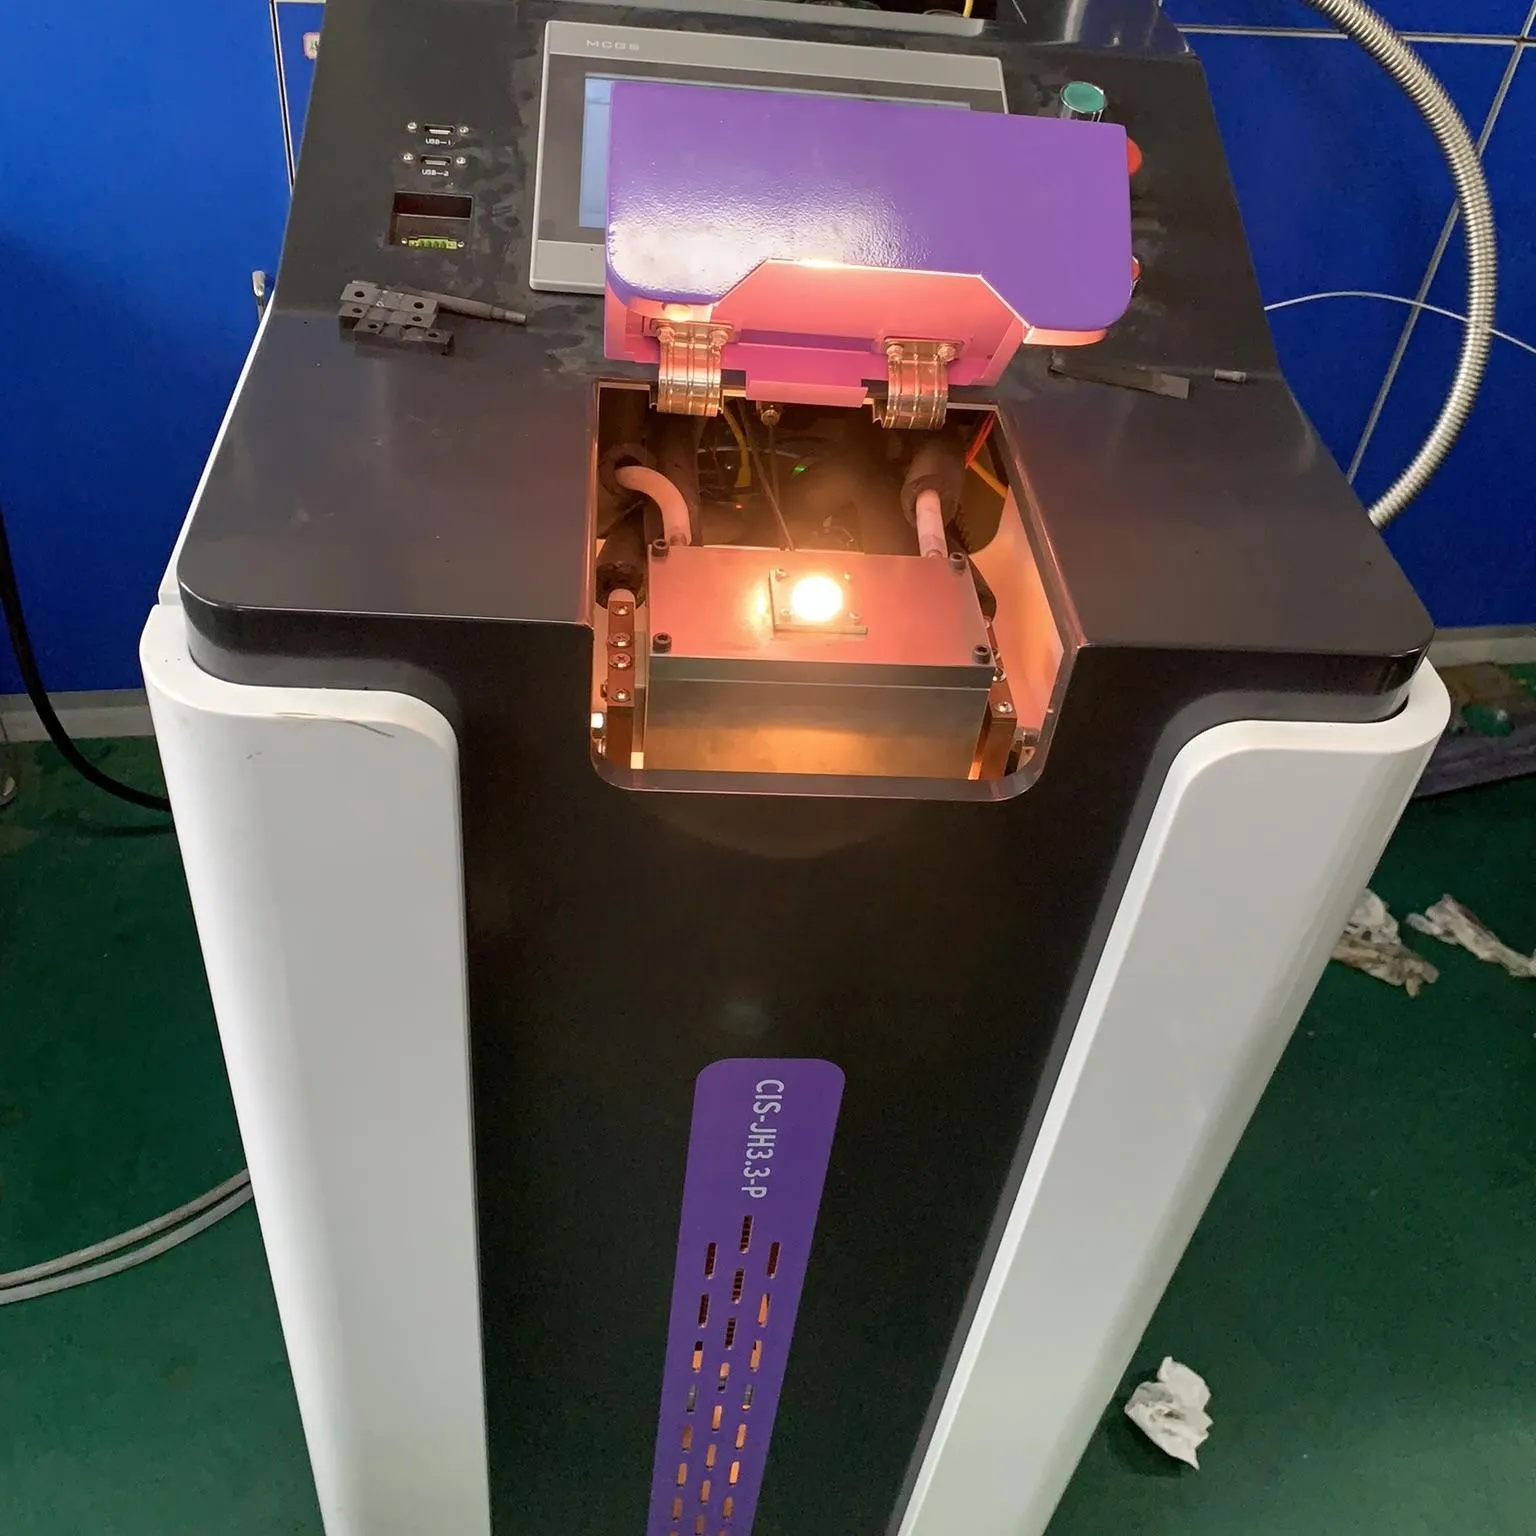 Dispositivo de calentamiento Joule de laboratorio 3000C, equipo de investigación de catalizadores monoatómicos para propiedades físicas extremas de materiales